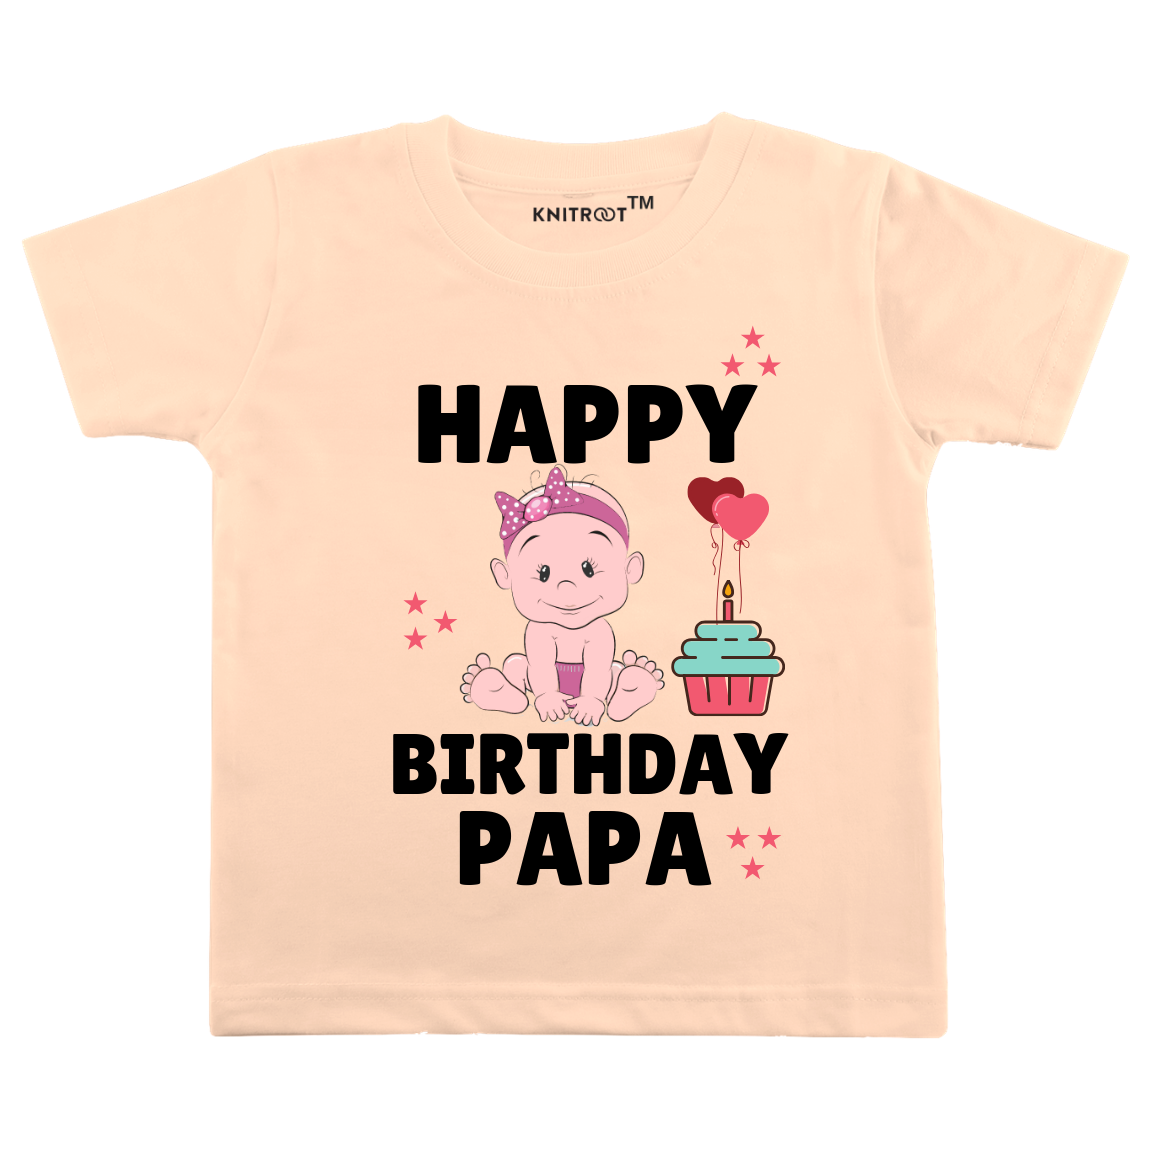 Happy Birthday Papa (2) Tee